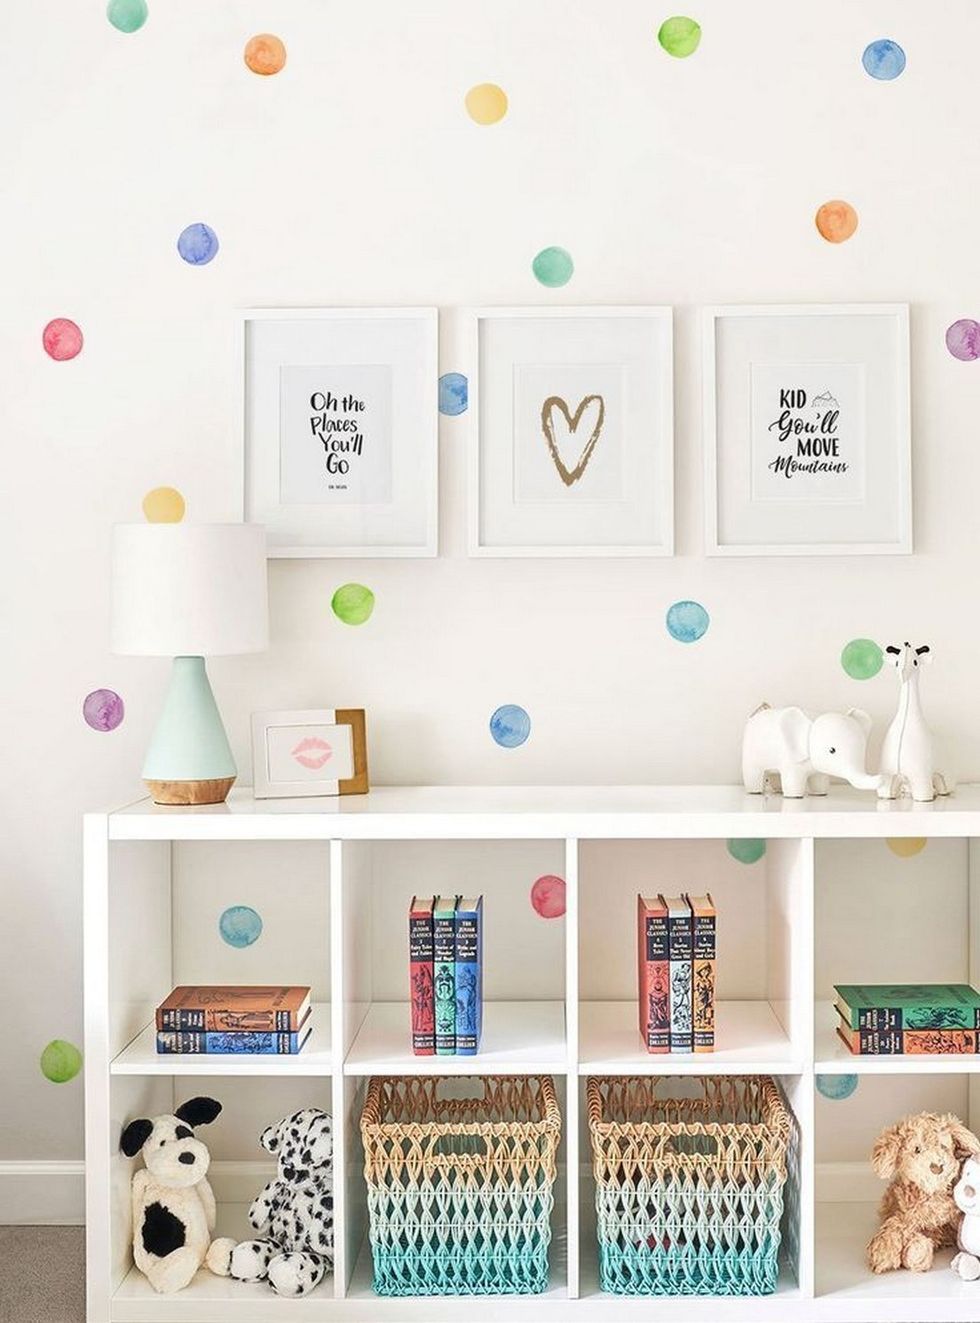 Color y madera para una estantería infantil DIY - DecoPeques